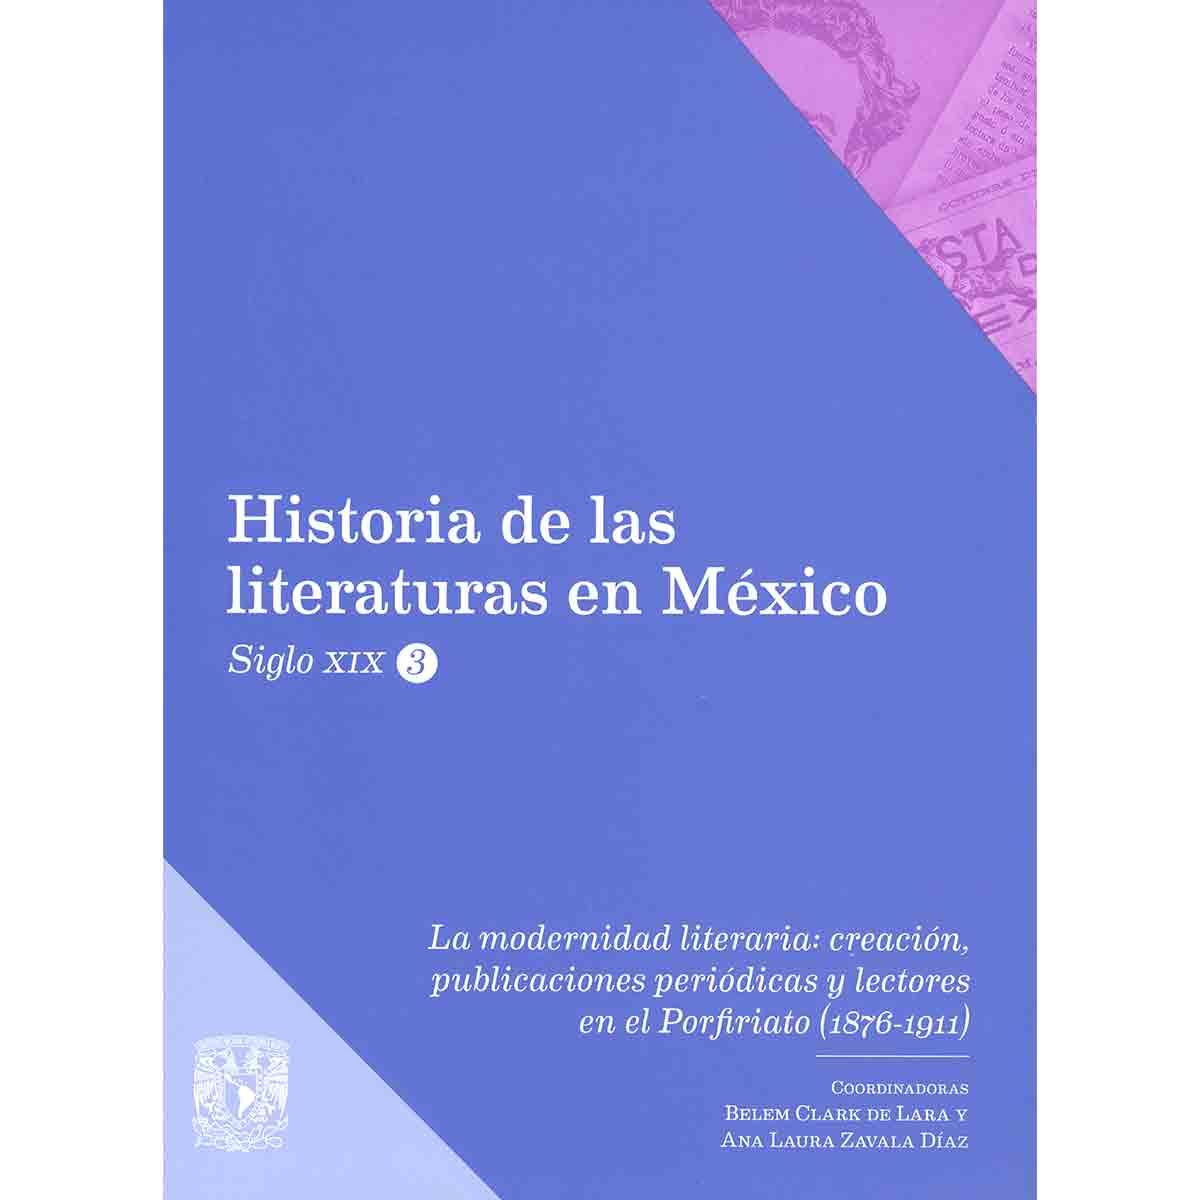 LA MODERNIDAD LITERARIA: CREACIÓN, PUBLICACIONES PERIÓDICAS Y LECTORES EN EL PORFIRIATO (1876-1911). HISTORIA DE LAS LITERATURAS EN MÉXICO. SIGLO XIX. VOL. III